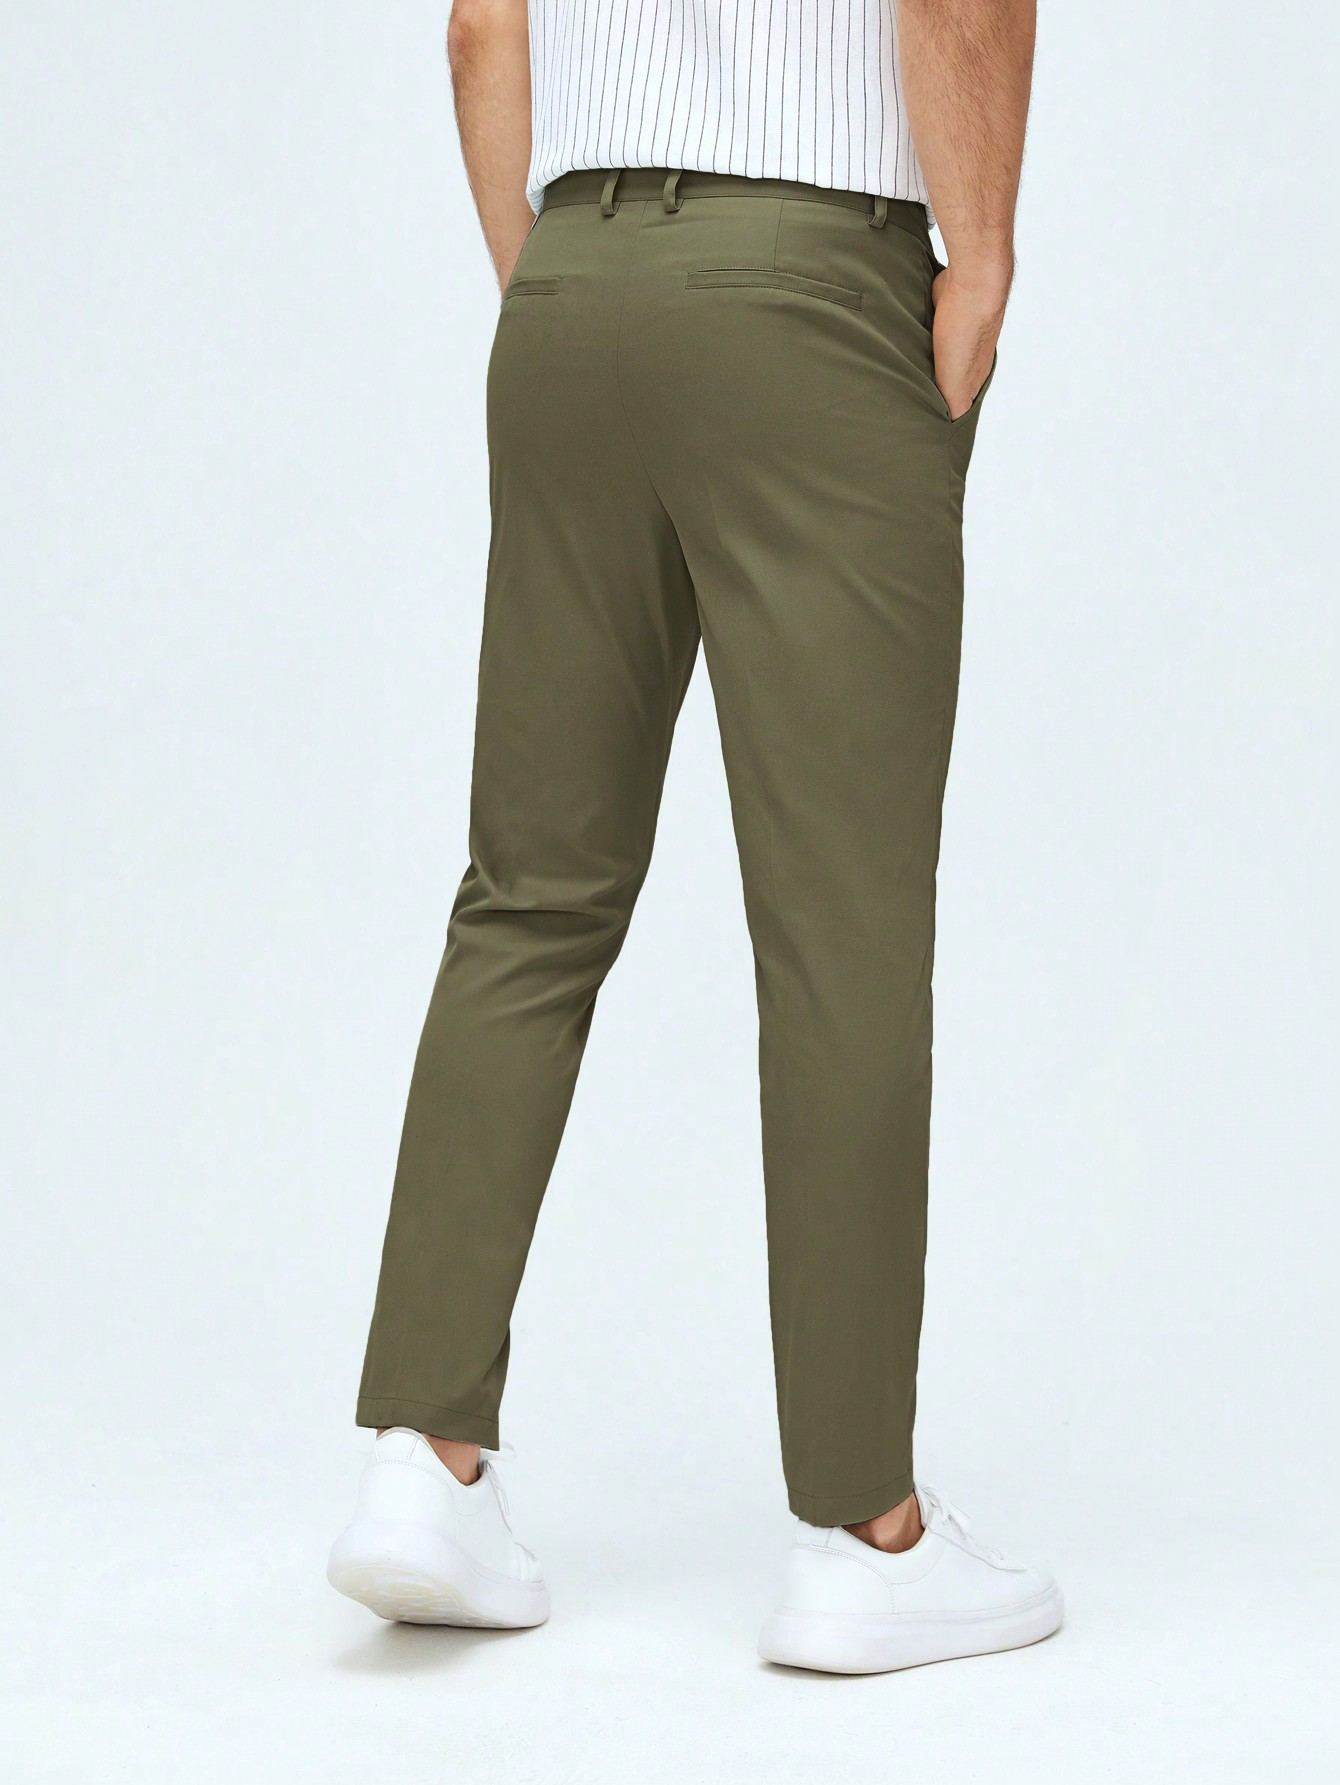 Мужские классические классические брюки из тканого материала с боковыми карманами Manfinity Mode, армейский зеленый